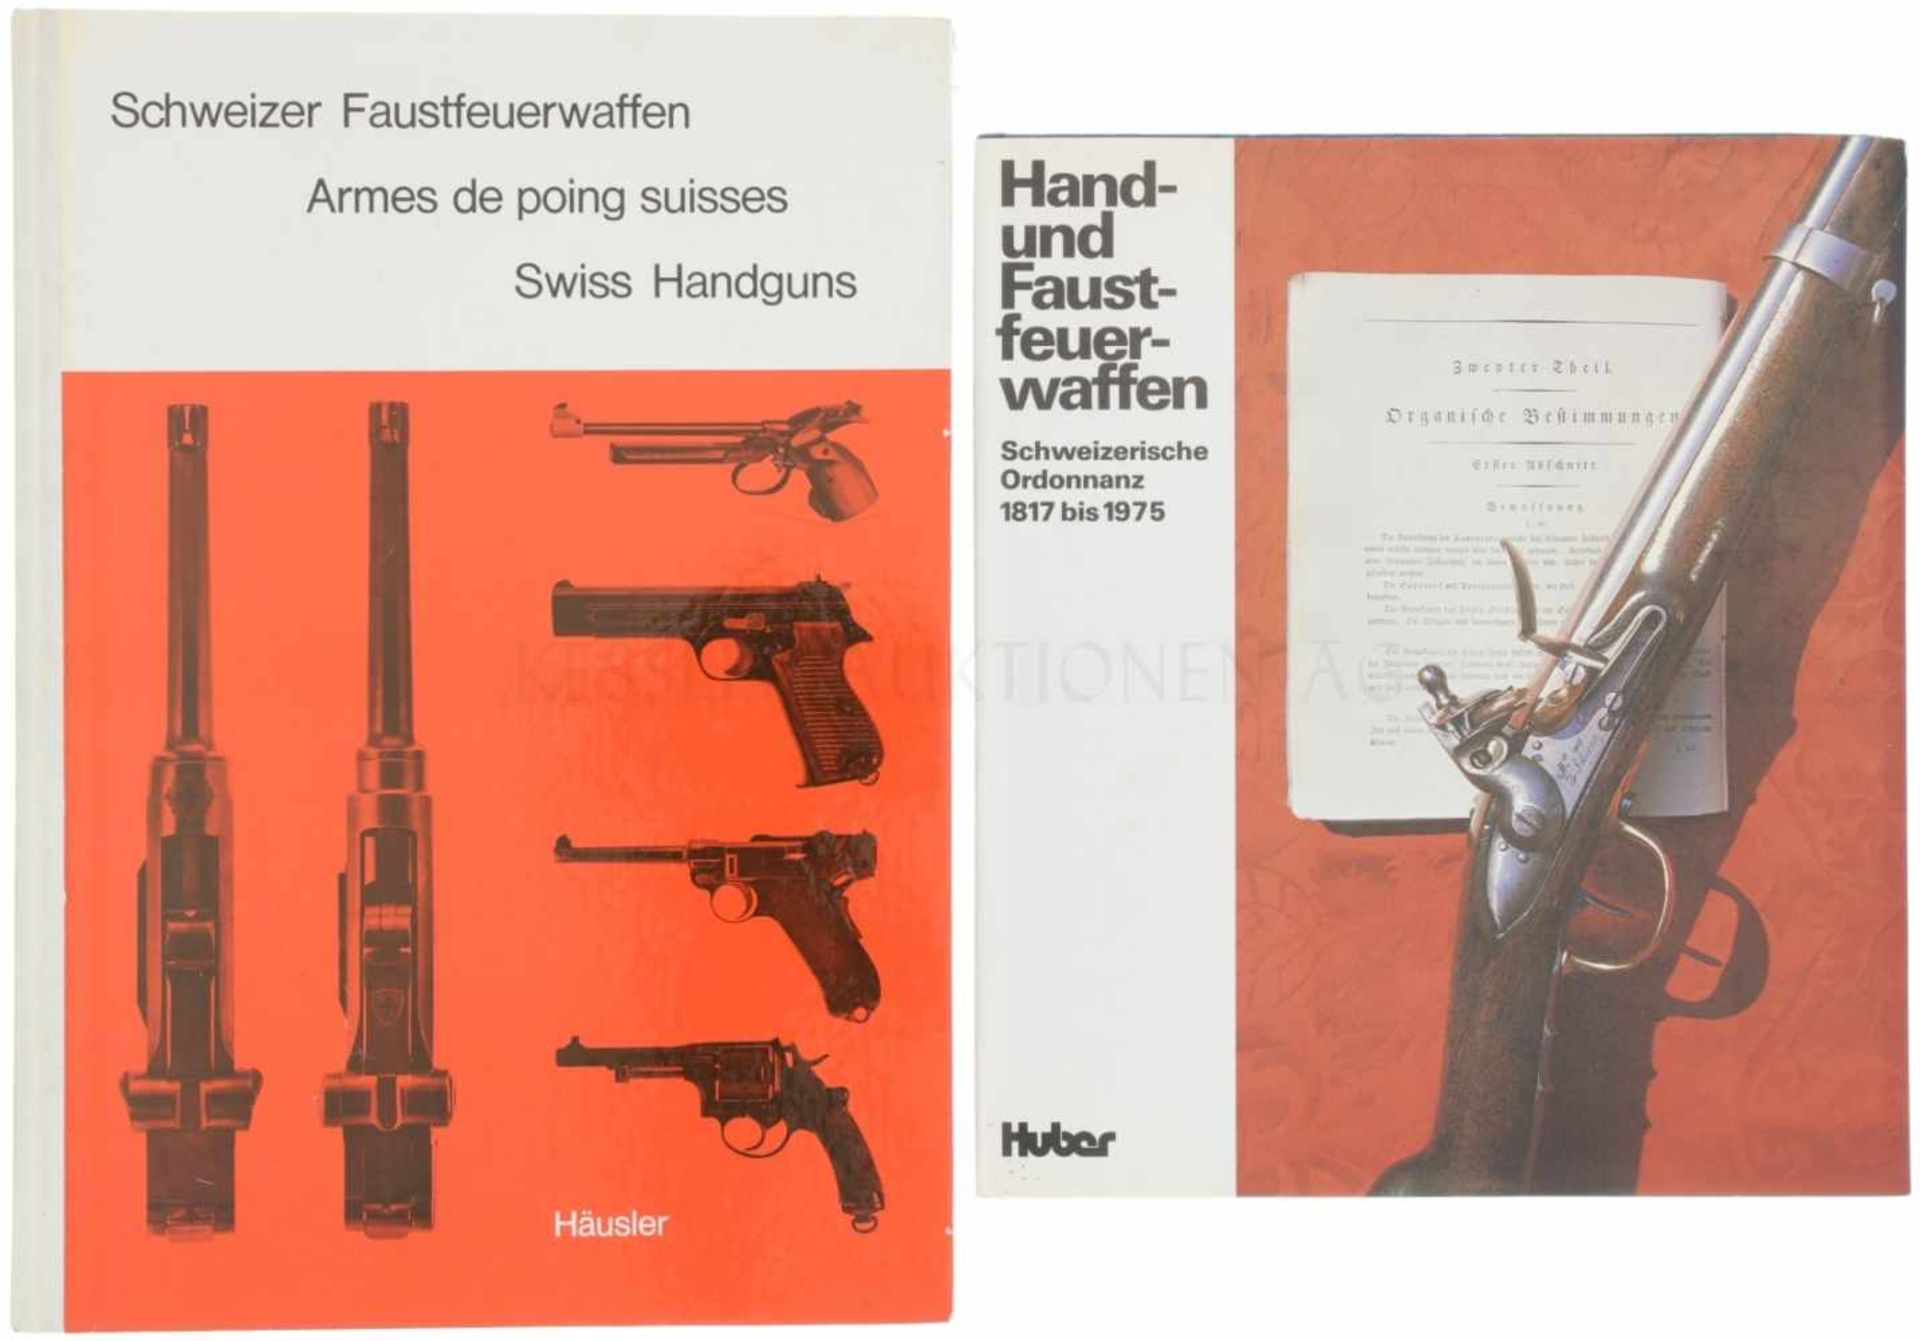 Konvolut von 2 Büchern 1. Hand-und Faustfeuerwaffen, Schweizerische Ordonnanz 1817-1975,